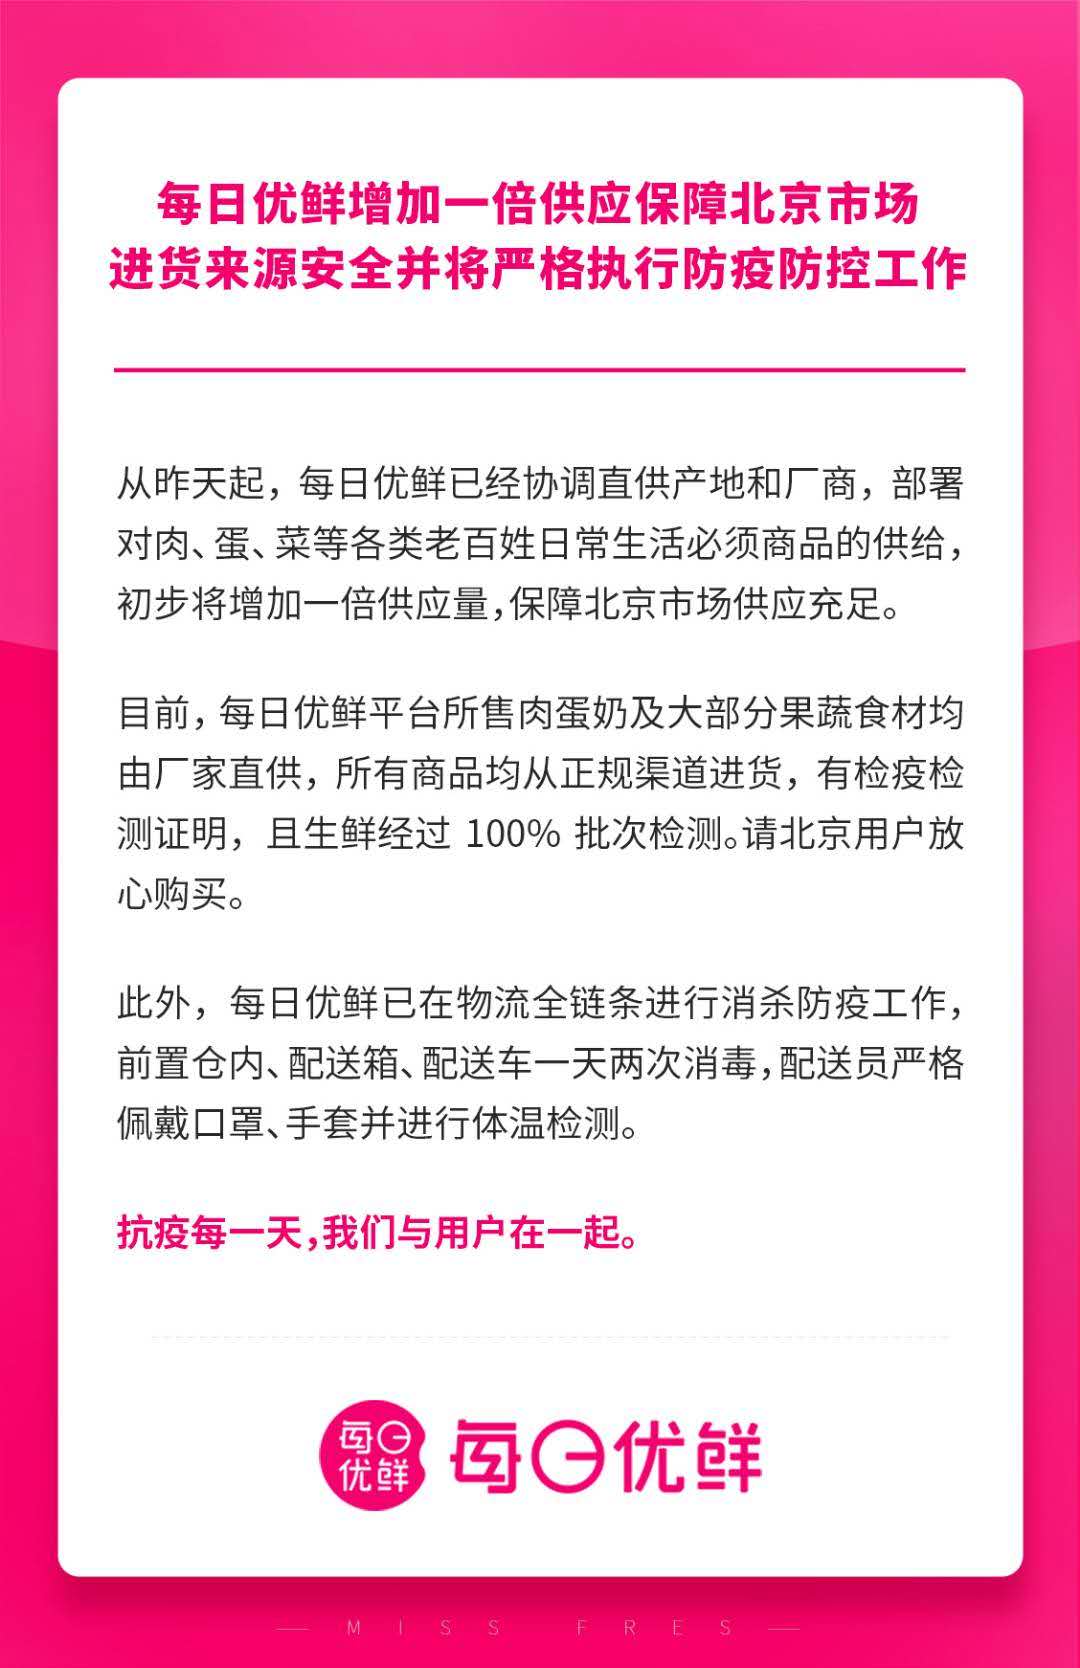 每日优鲜增加一倍供应保障北京市场_零售_电商报